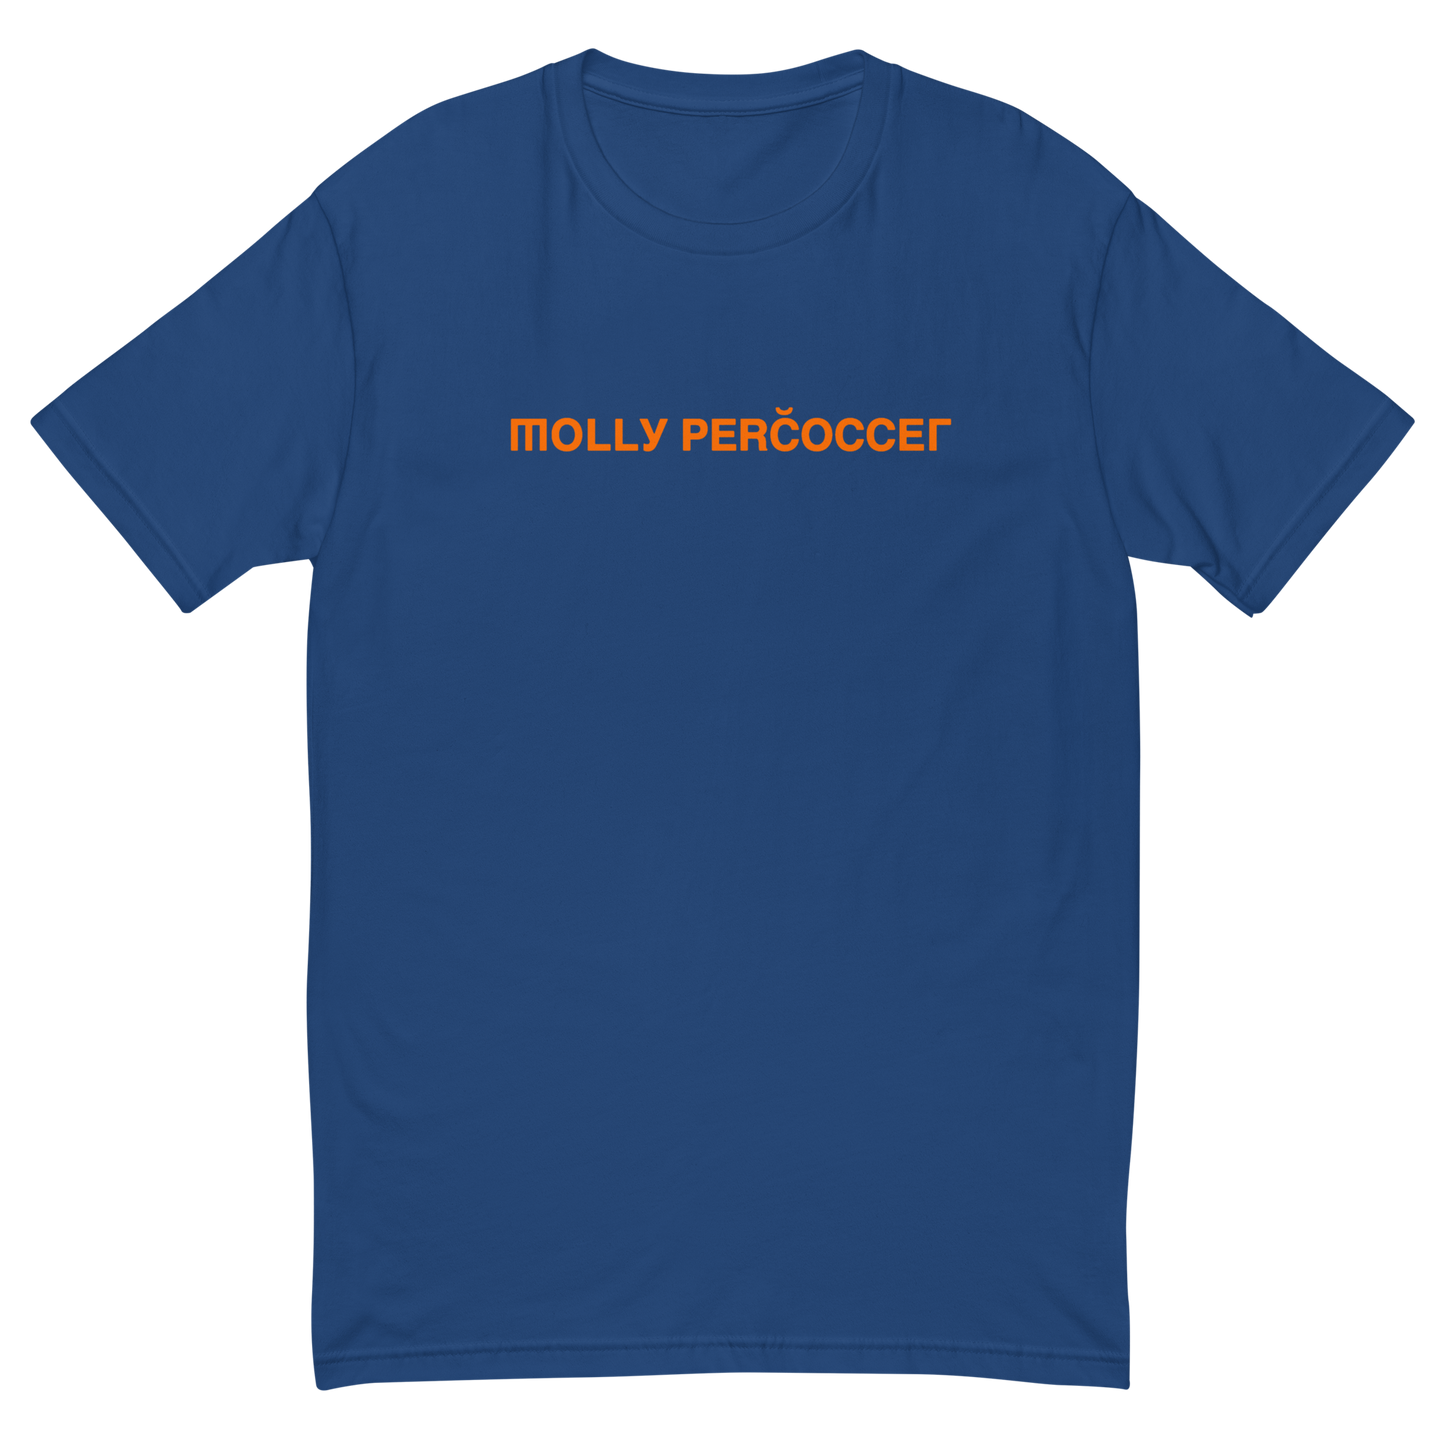 LAST "Molly Percoccet" NY Short Sleeve T-shirt